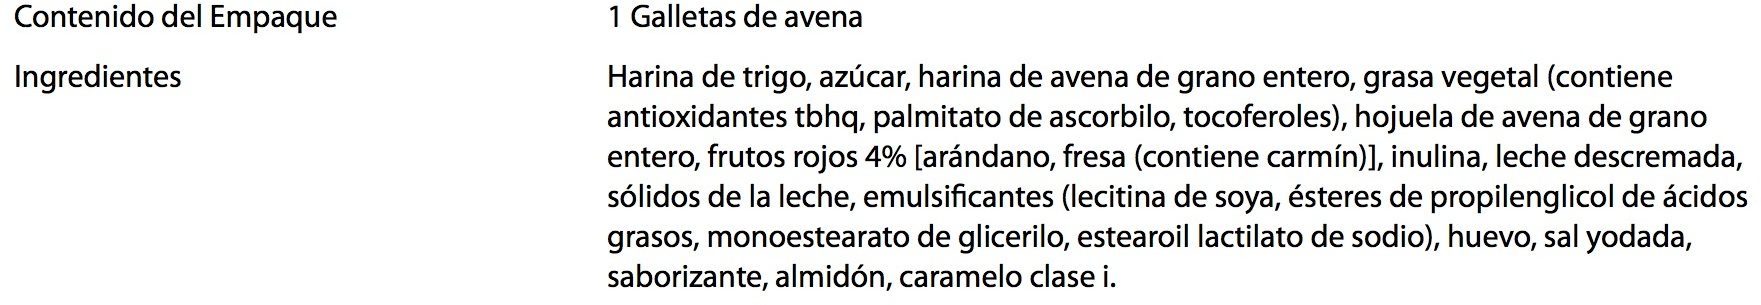 Galletas de Avena - Ingredients - es